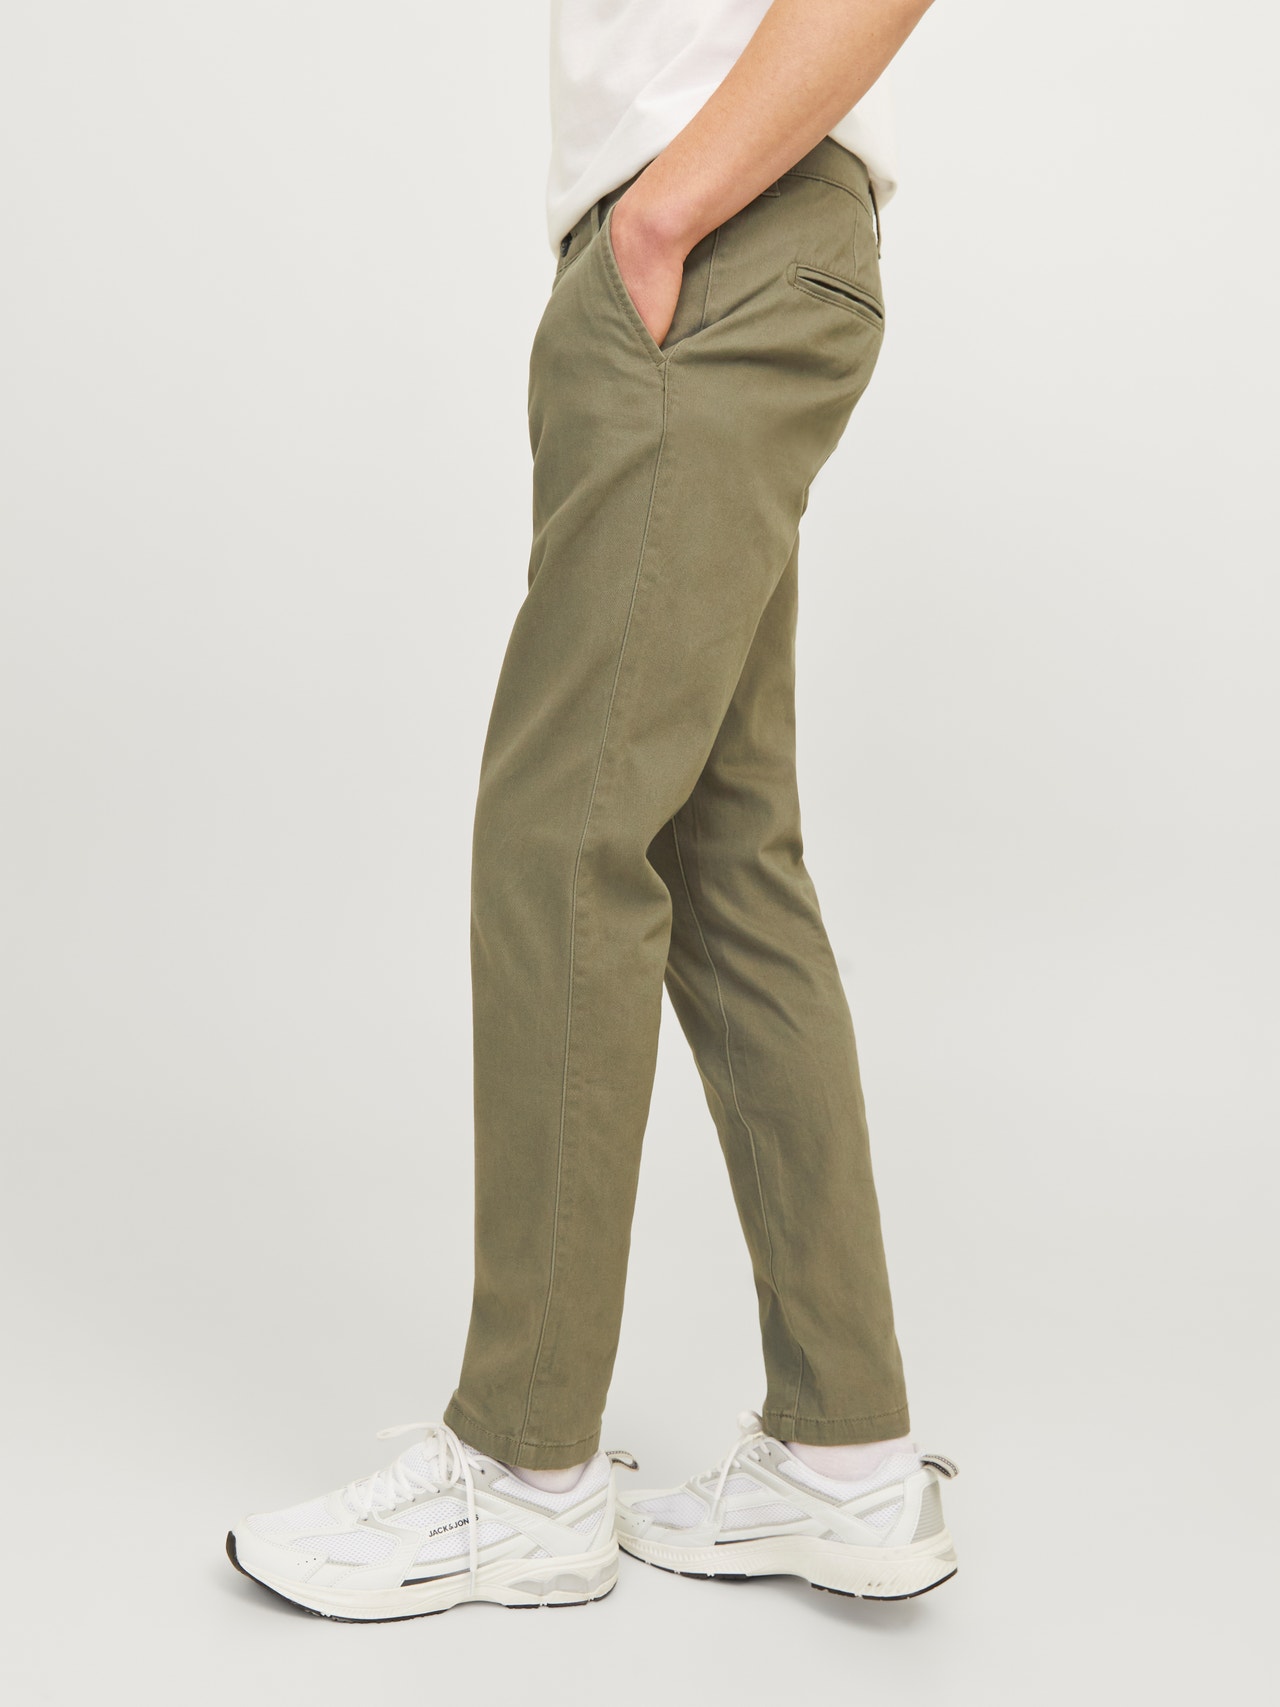 Jack & Jones Slim Fit Spodnie chino -Dusty Olive - 12174152